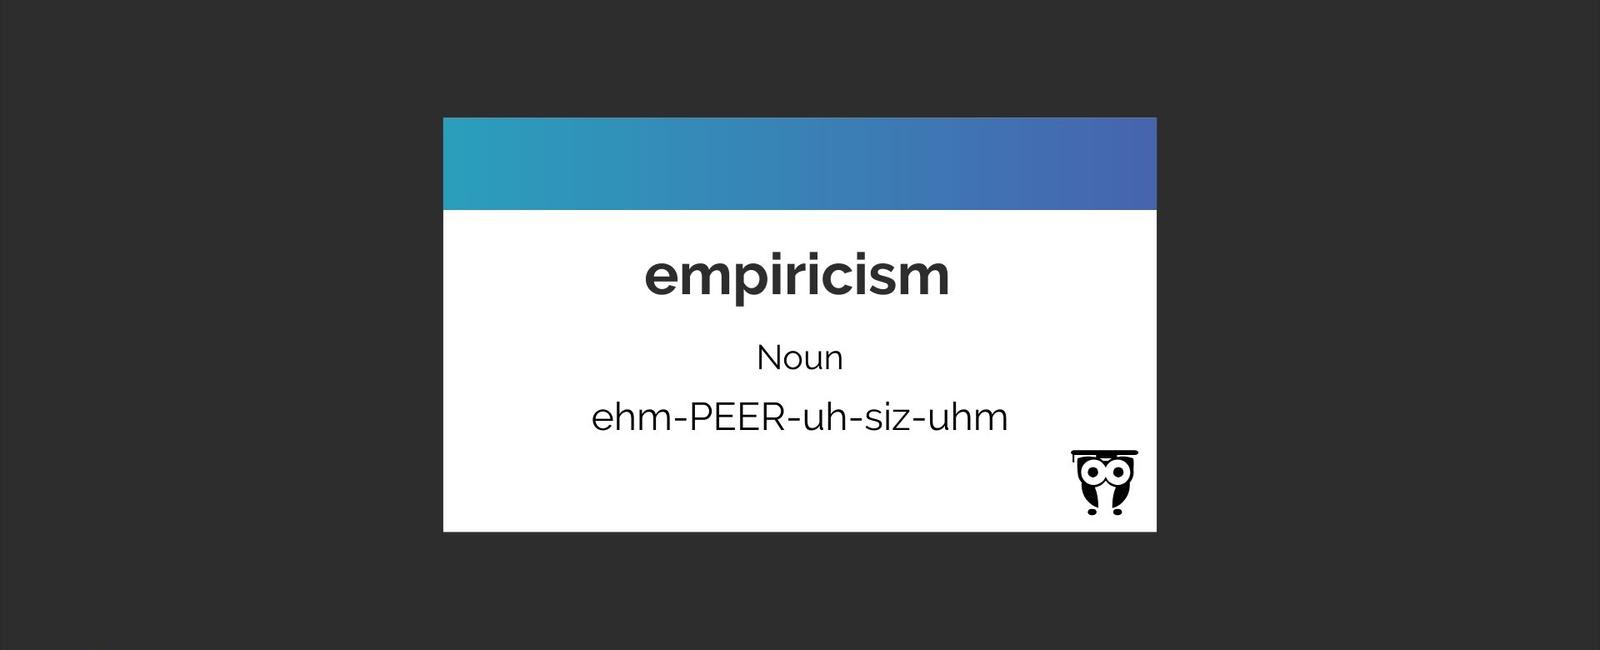 Empiricism